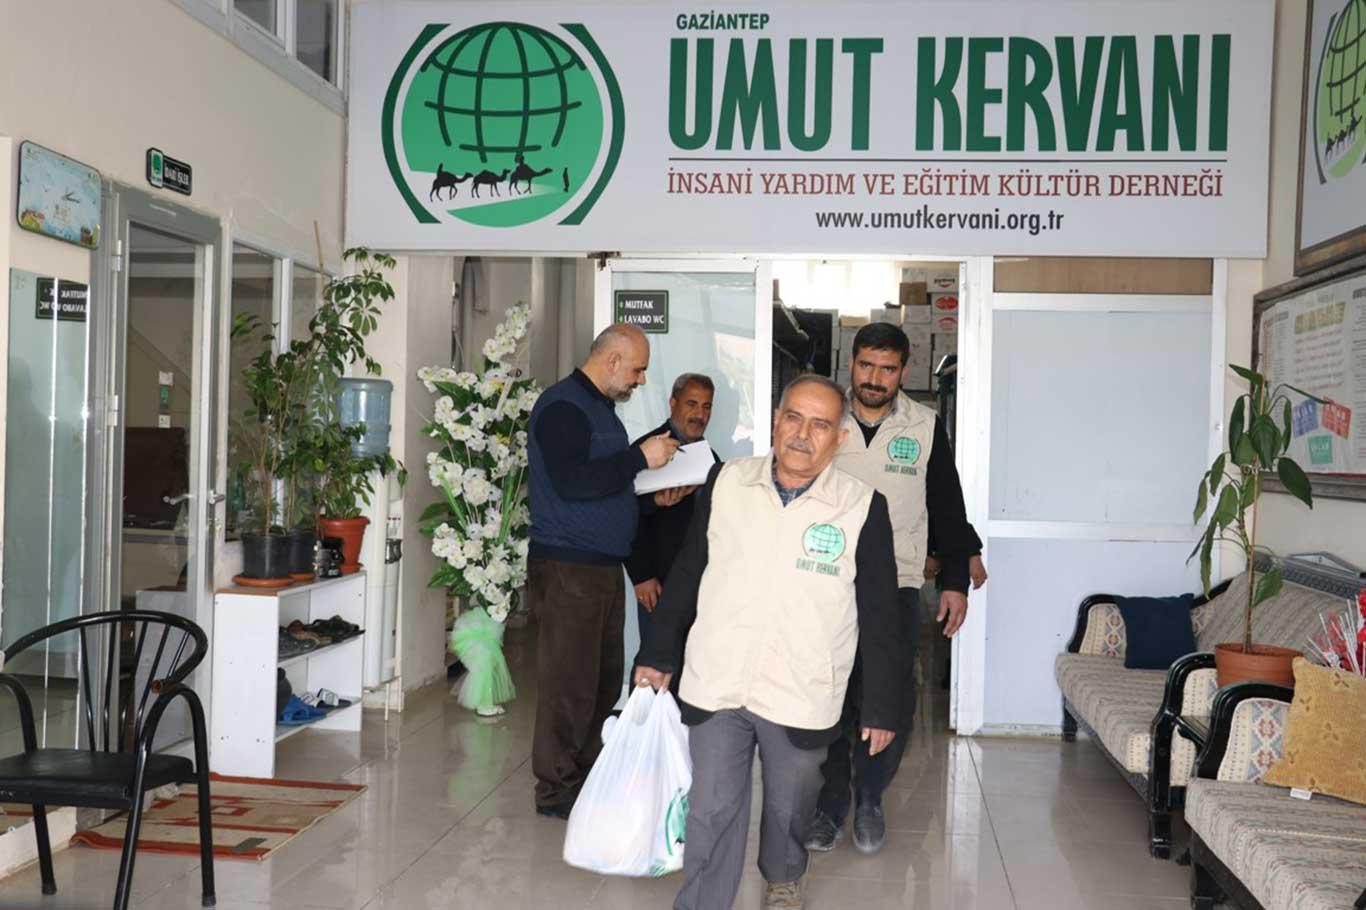 Gaziantep Umut Kervanı ihtiyaç sahibi ailelere gıda yardımında bulundu